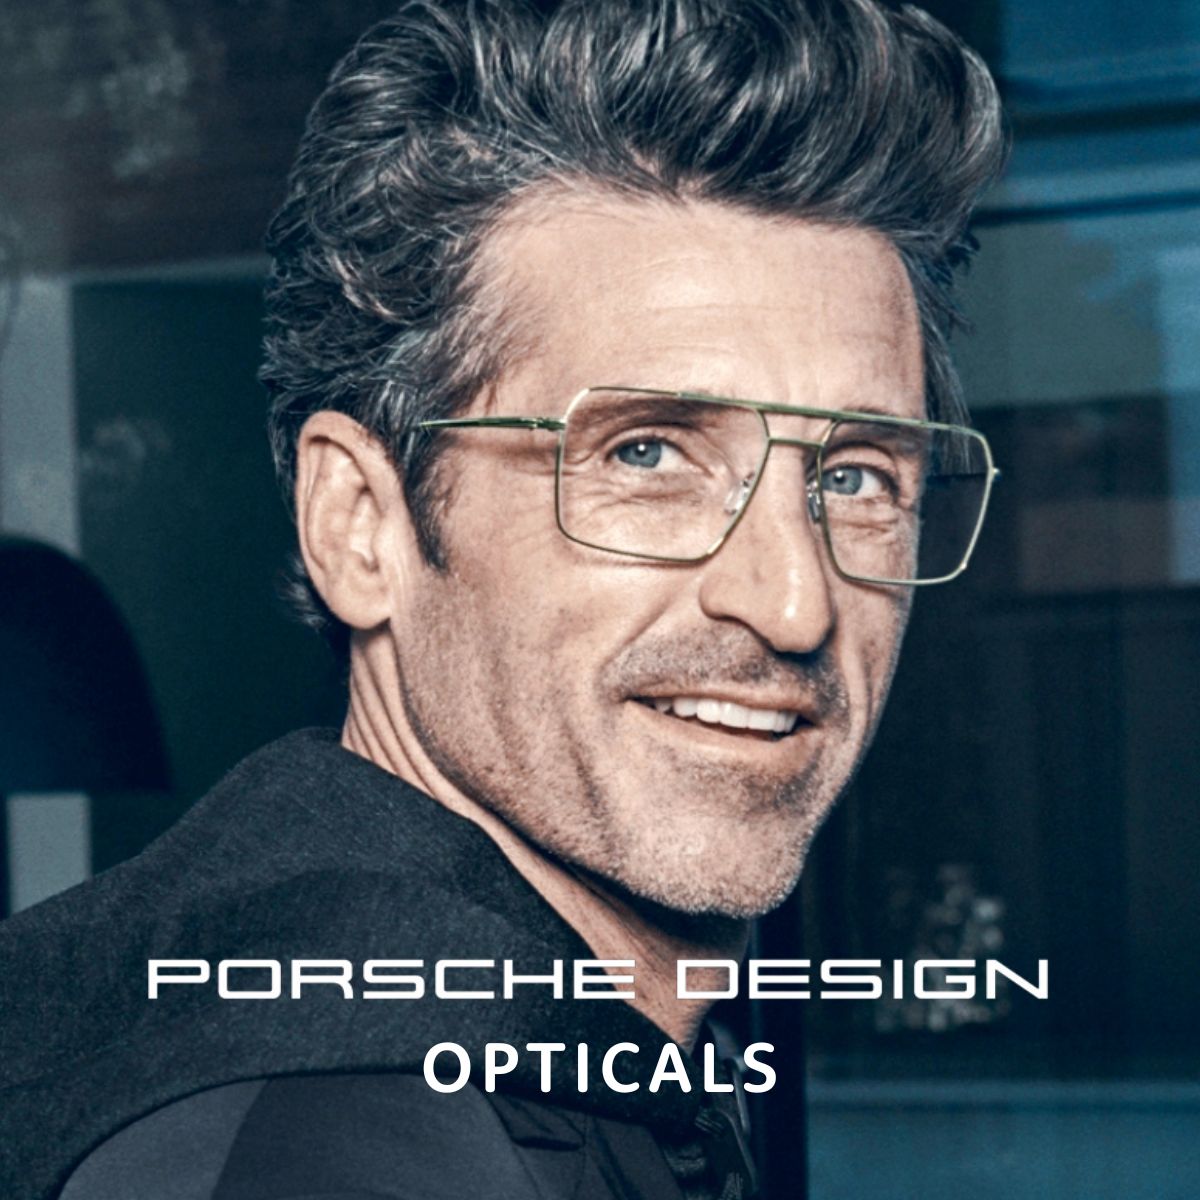 "Shop Premium Porsche Design Sunglasses for Men and Women at Optorium"